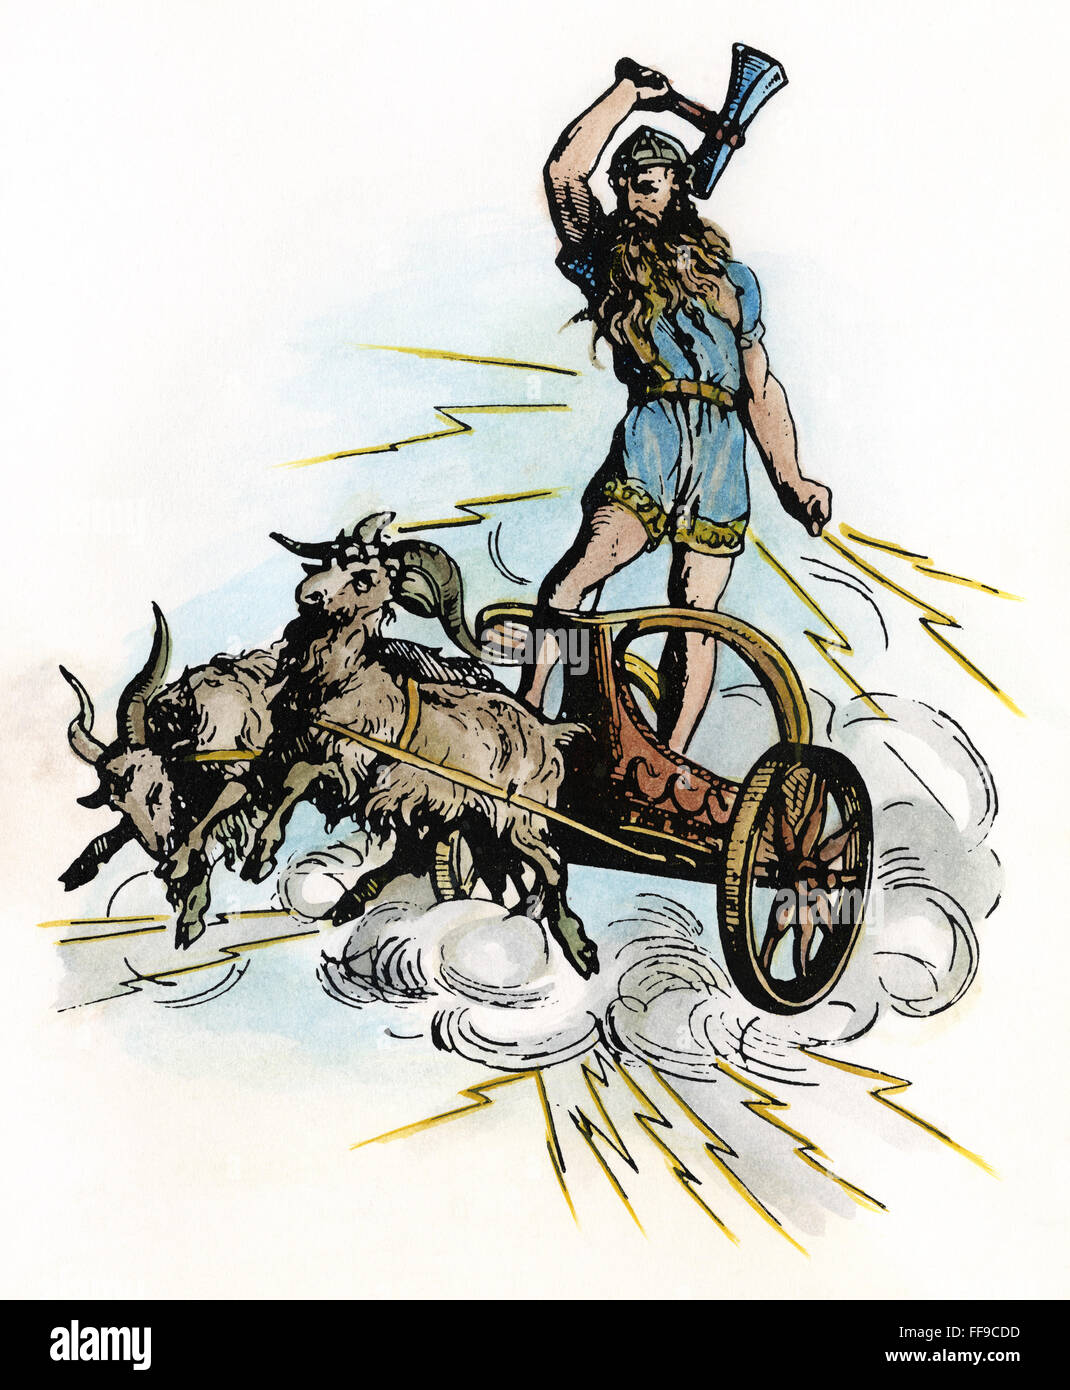 NORDISCHE MYTHOLOGIE: THOR. /nNordic-Germanic Gott des Krieges und des Donners. Abbildung, 19. Jahrhundert. Stockfoto